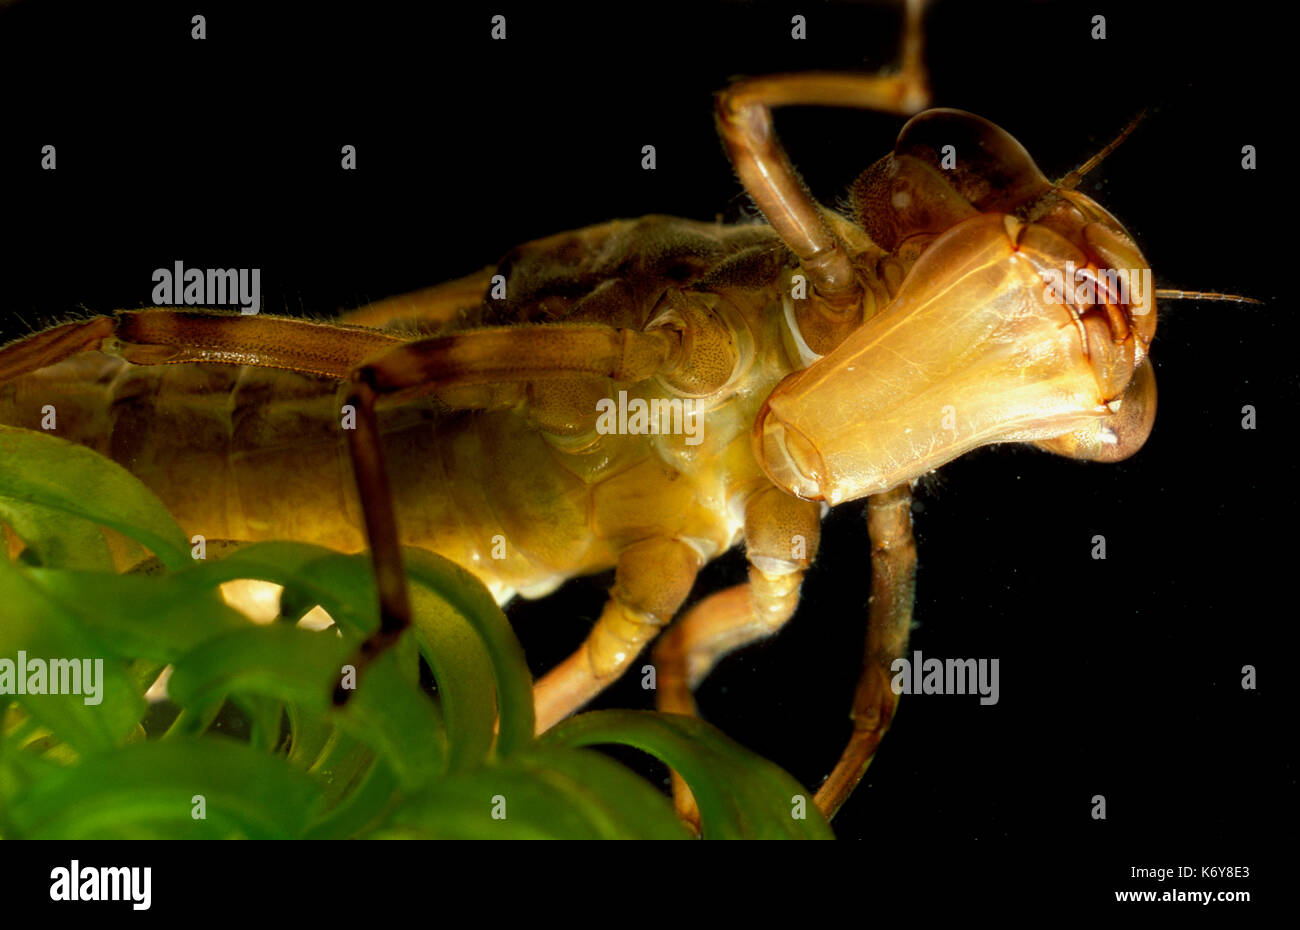 L'imperatore dragonfly larve, anax imperator, uk subacquea, Hawker, stagno, che mostra l'estensione della mascella inferiore che spara fuori per la cattura della preda Foto Stock